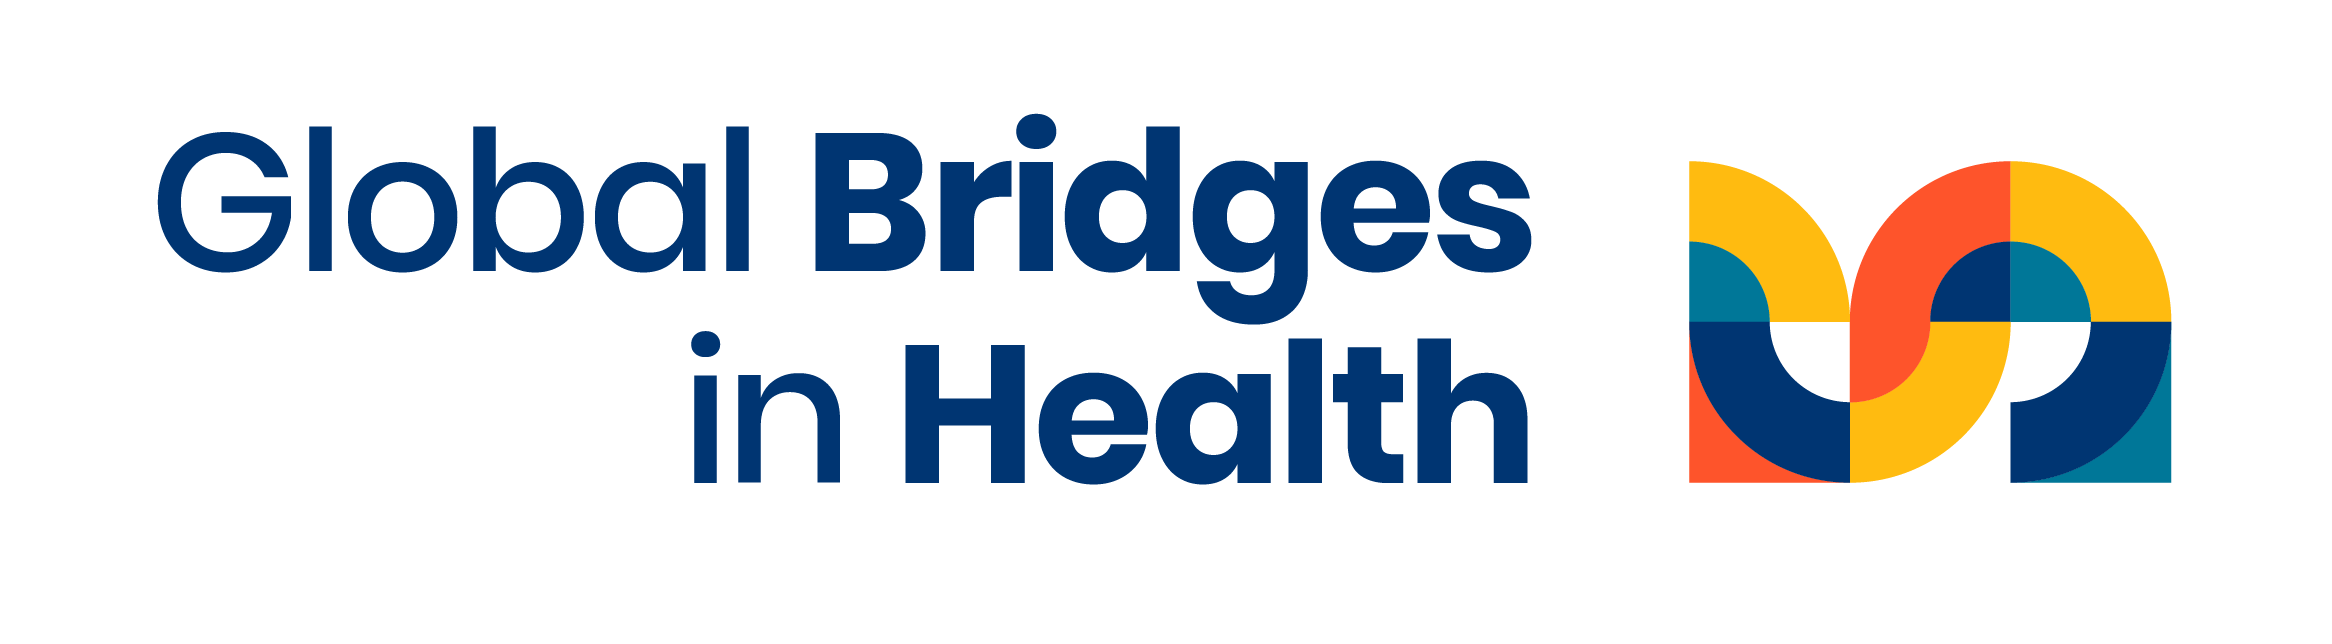 Global bridges in Health